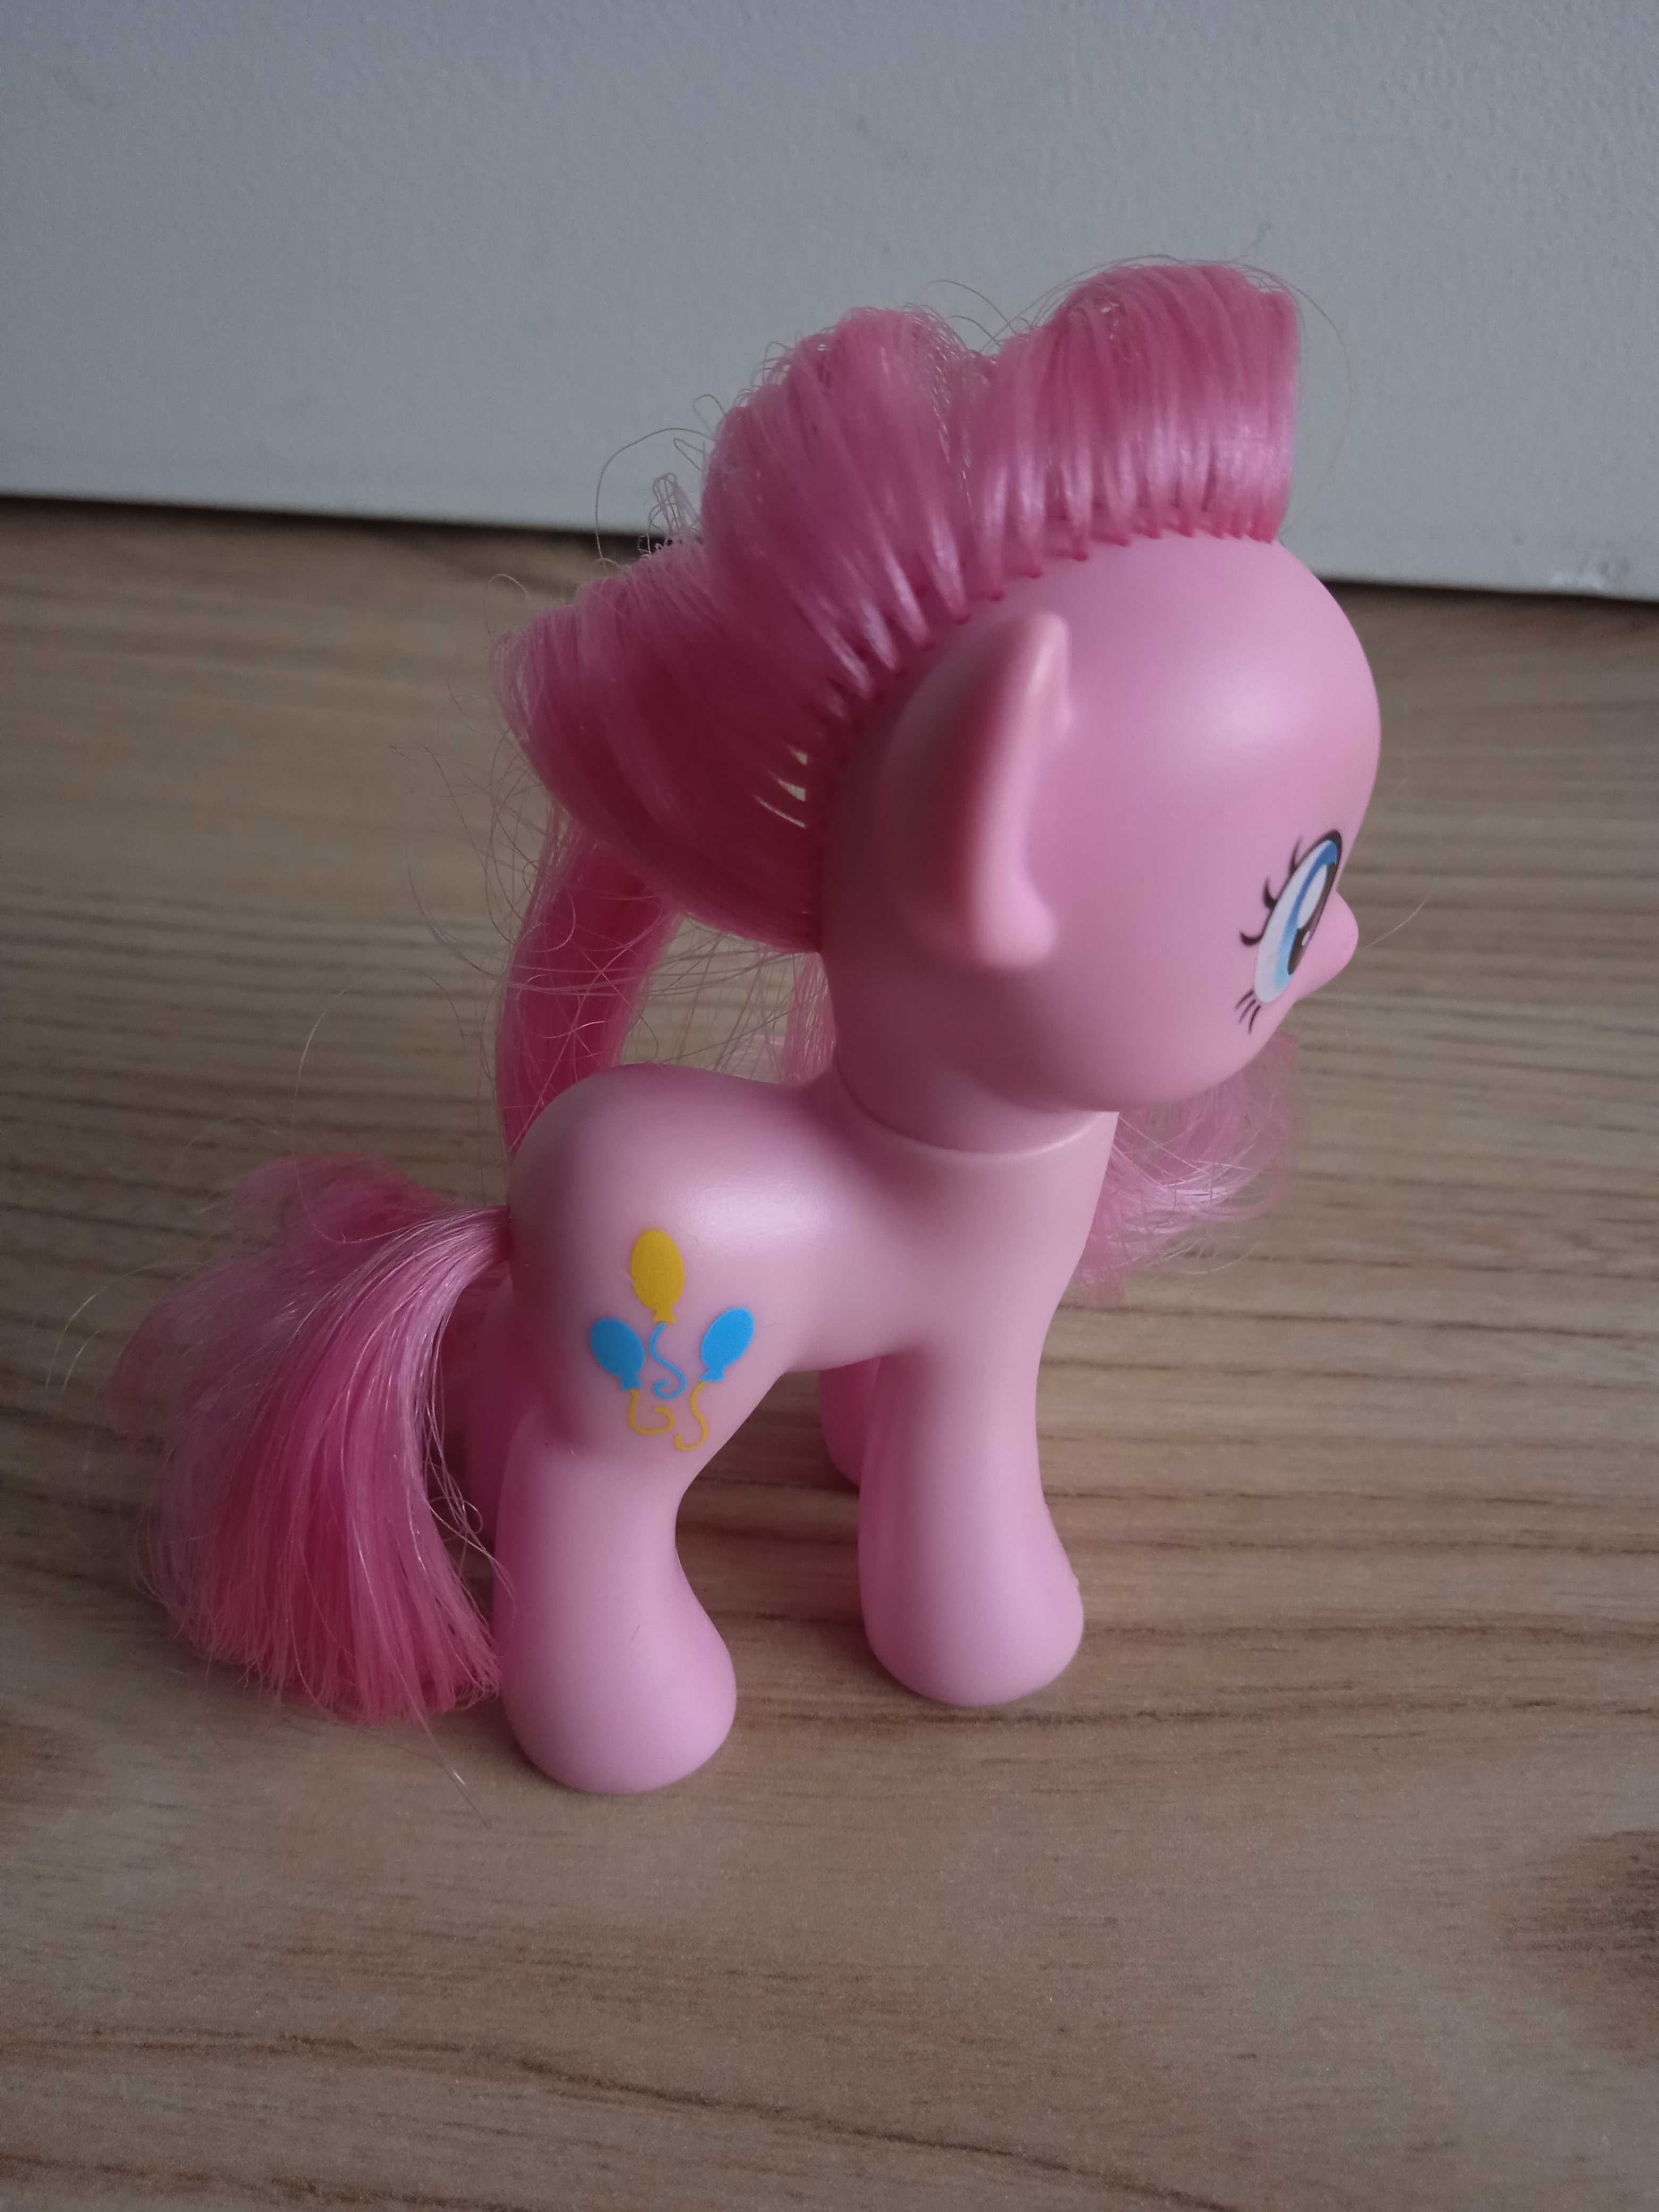 Figurka Hasbro z serii My Little Pony - Pinki Pie ok. 8 cm. wys.